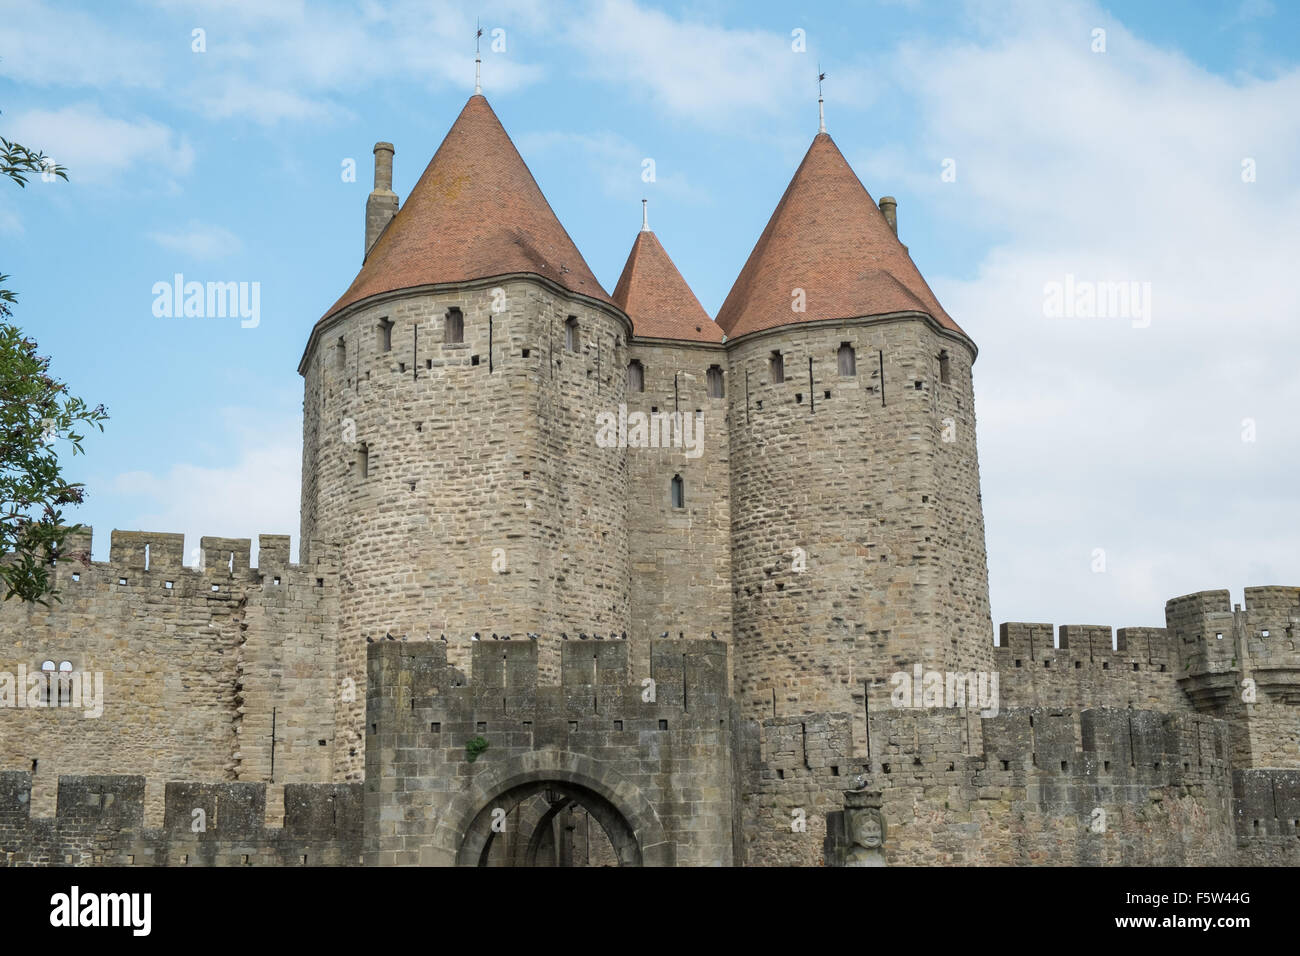 Porte Narbonnaise or Narbonne Gate entry to La Cité, Carcassonne  Castle,Fort,Aude,France Stock Photo - Alamy